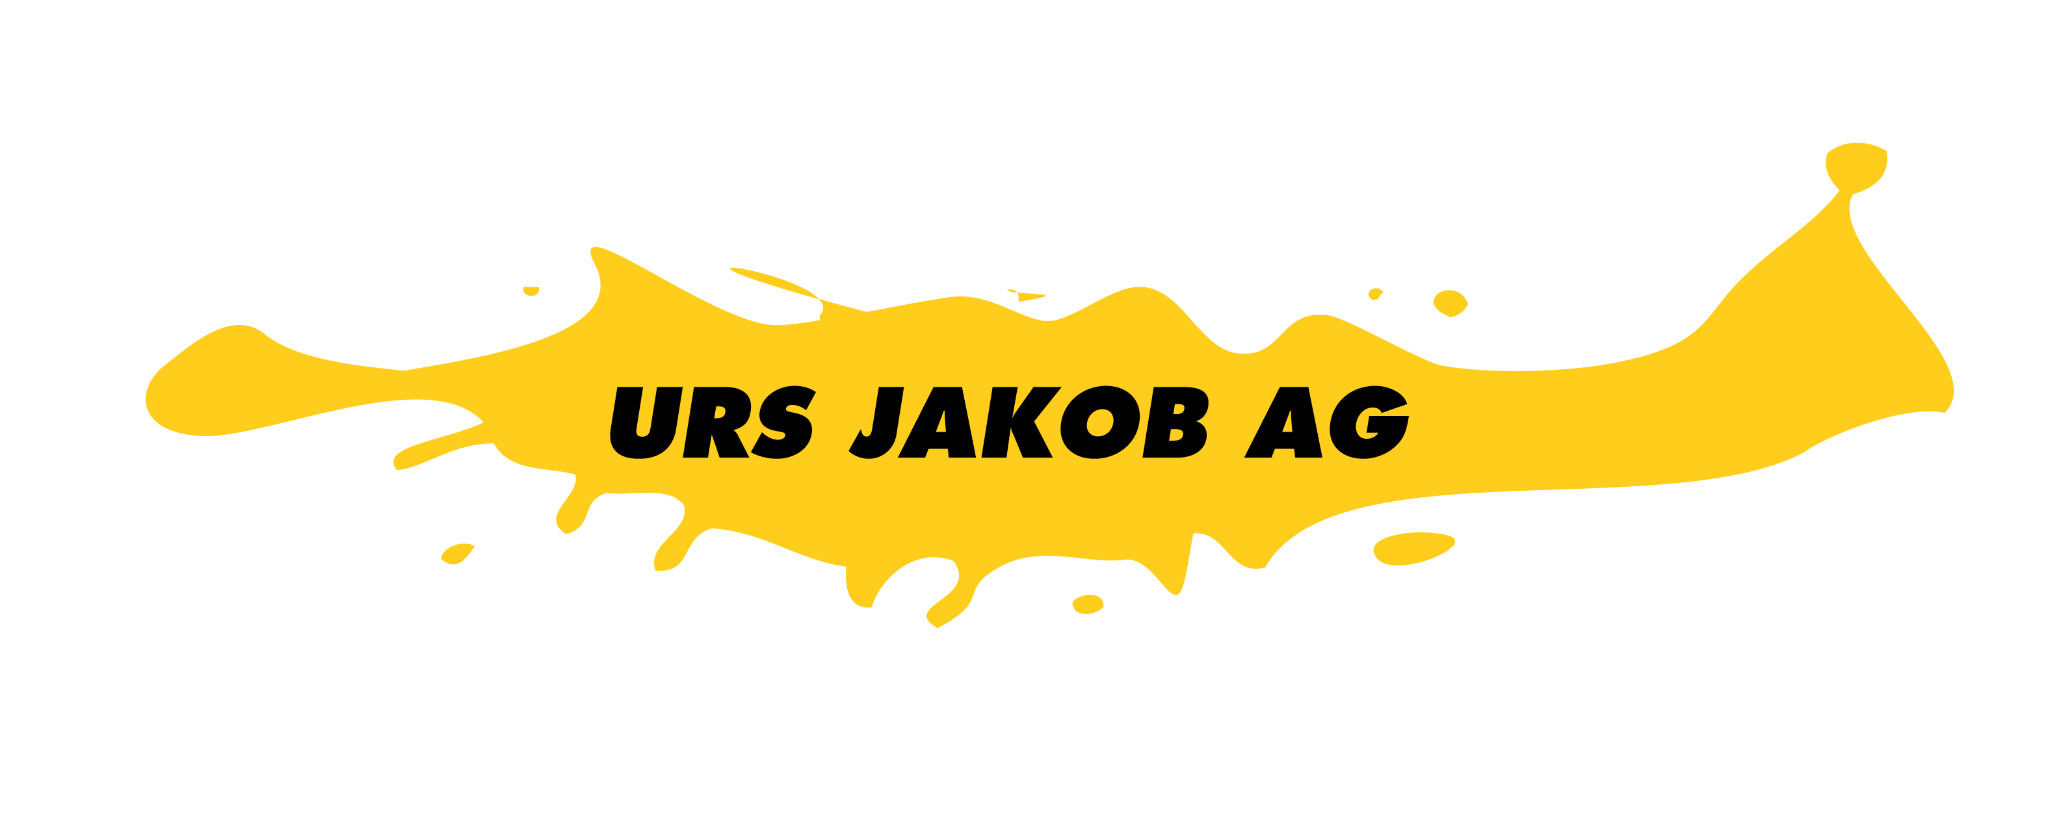 Urs Jakob AG 